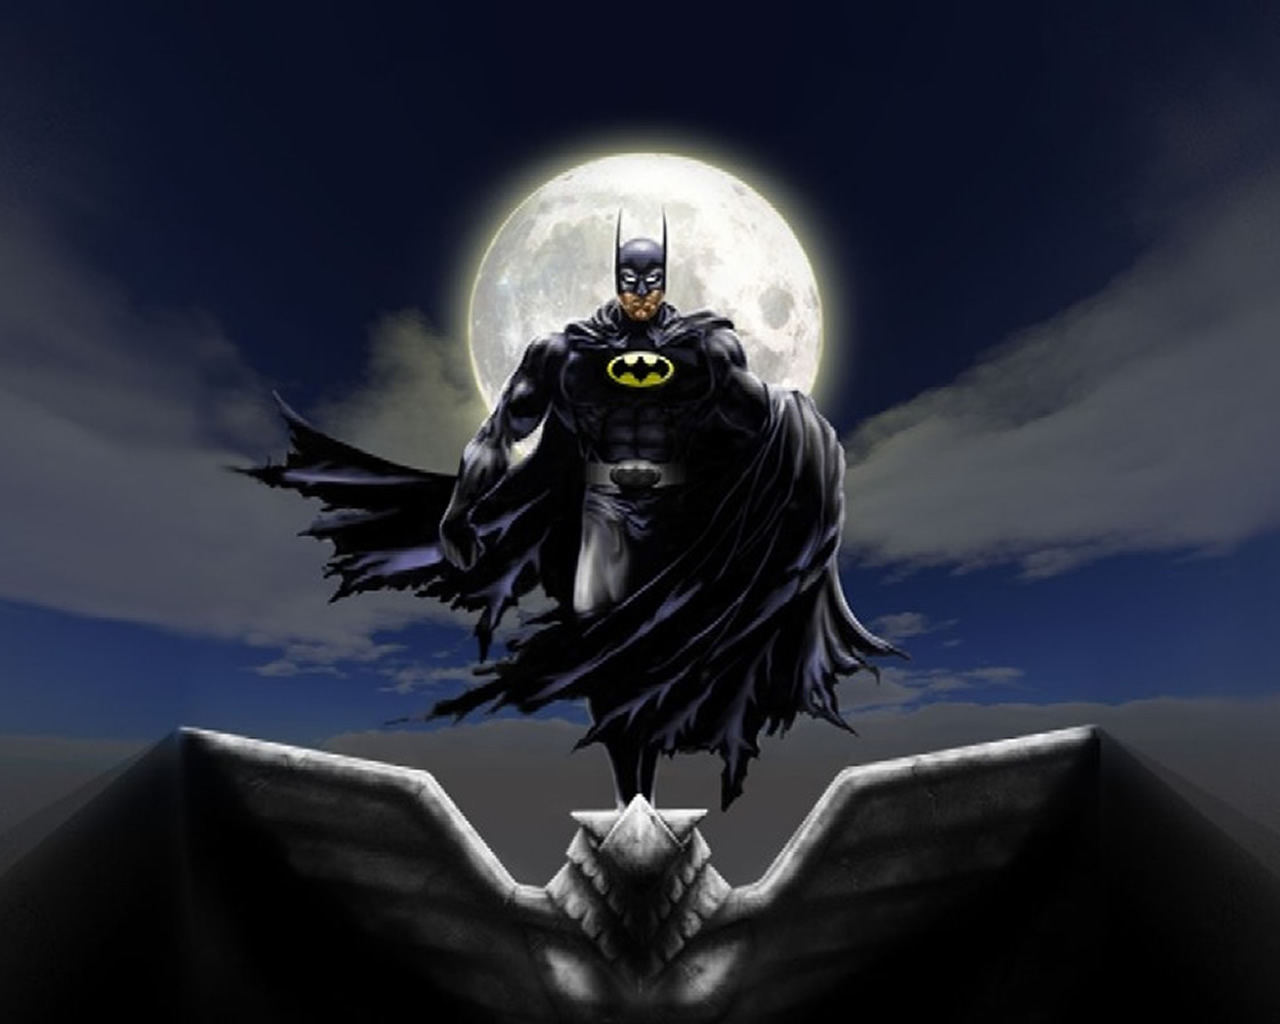 download wallpaper: Batman in het maanlicht wallpaper